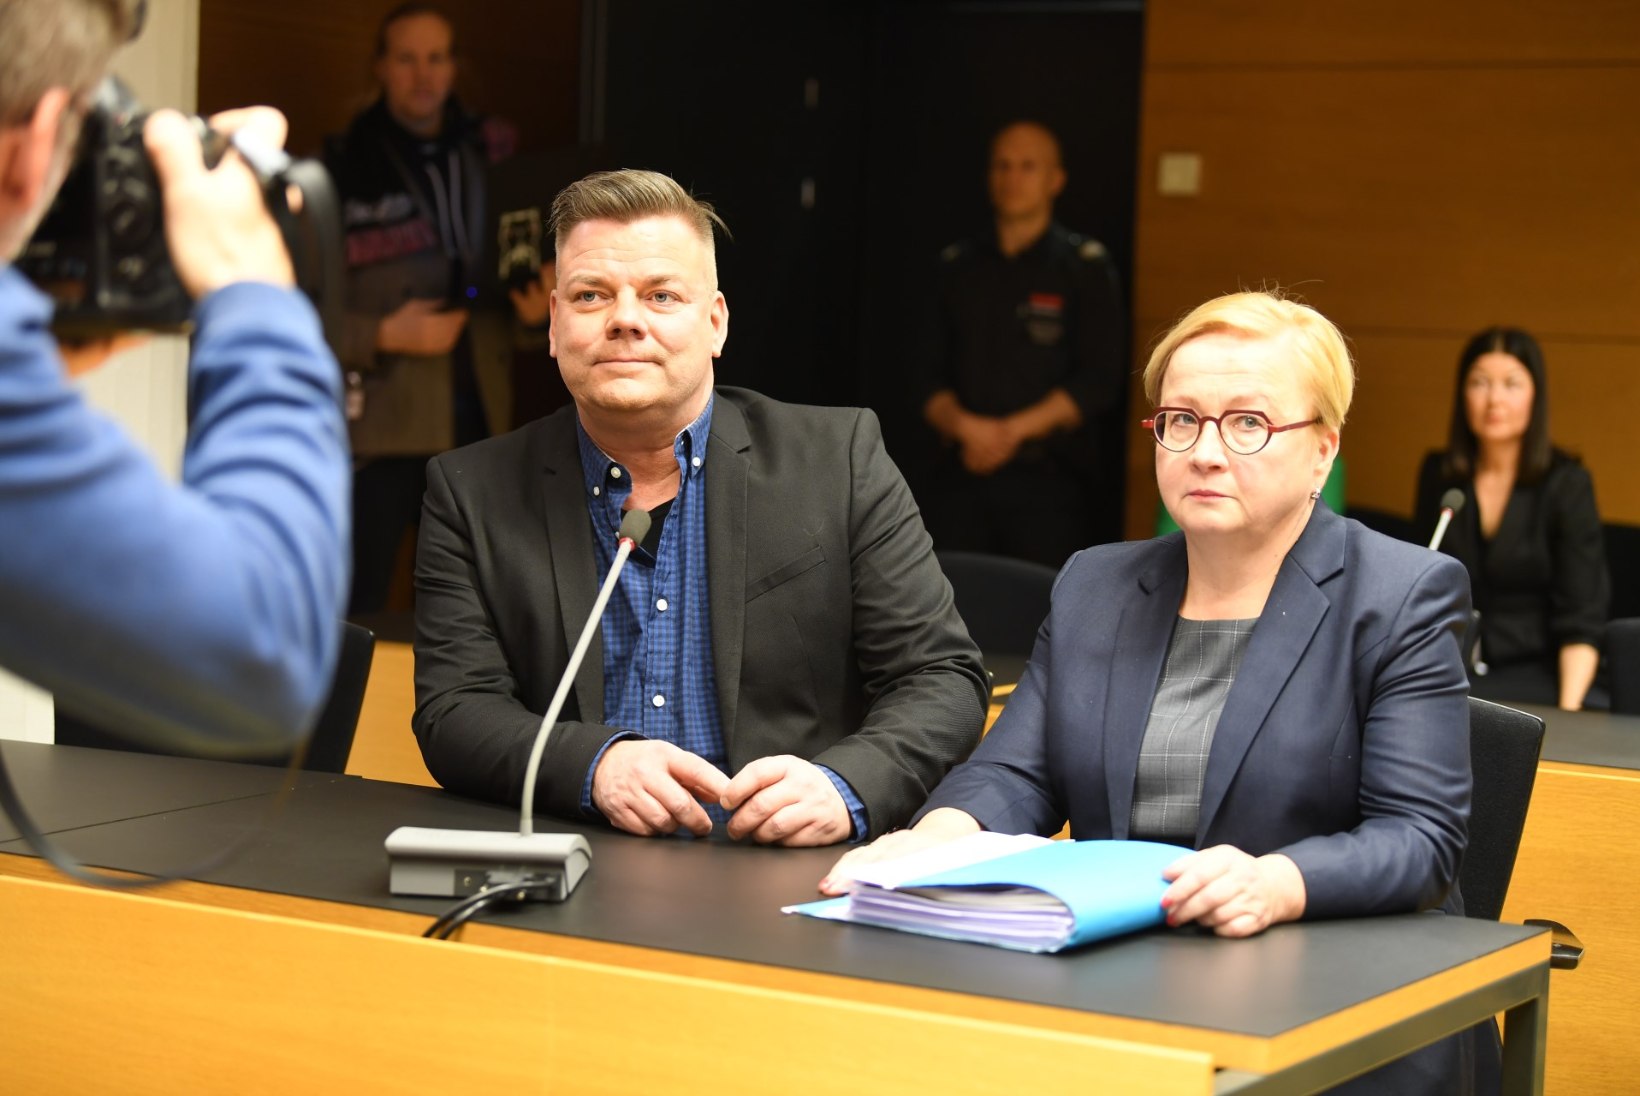 Soome laulja pääses lapse seksuaalse ärakasutamise süüdistusest, kuid sai krõbeda trahvi